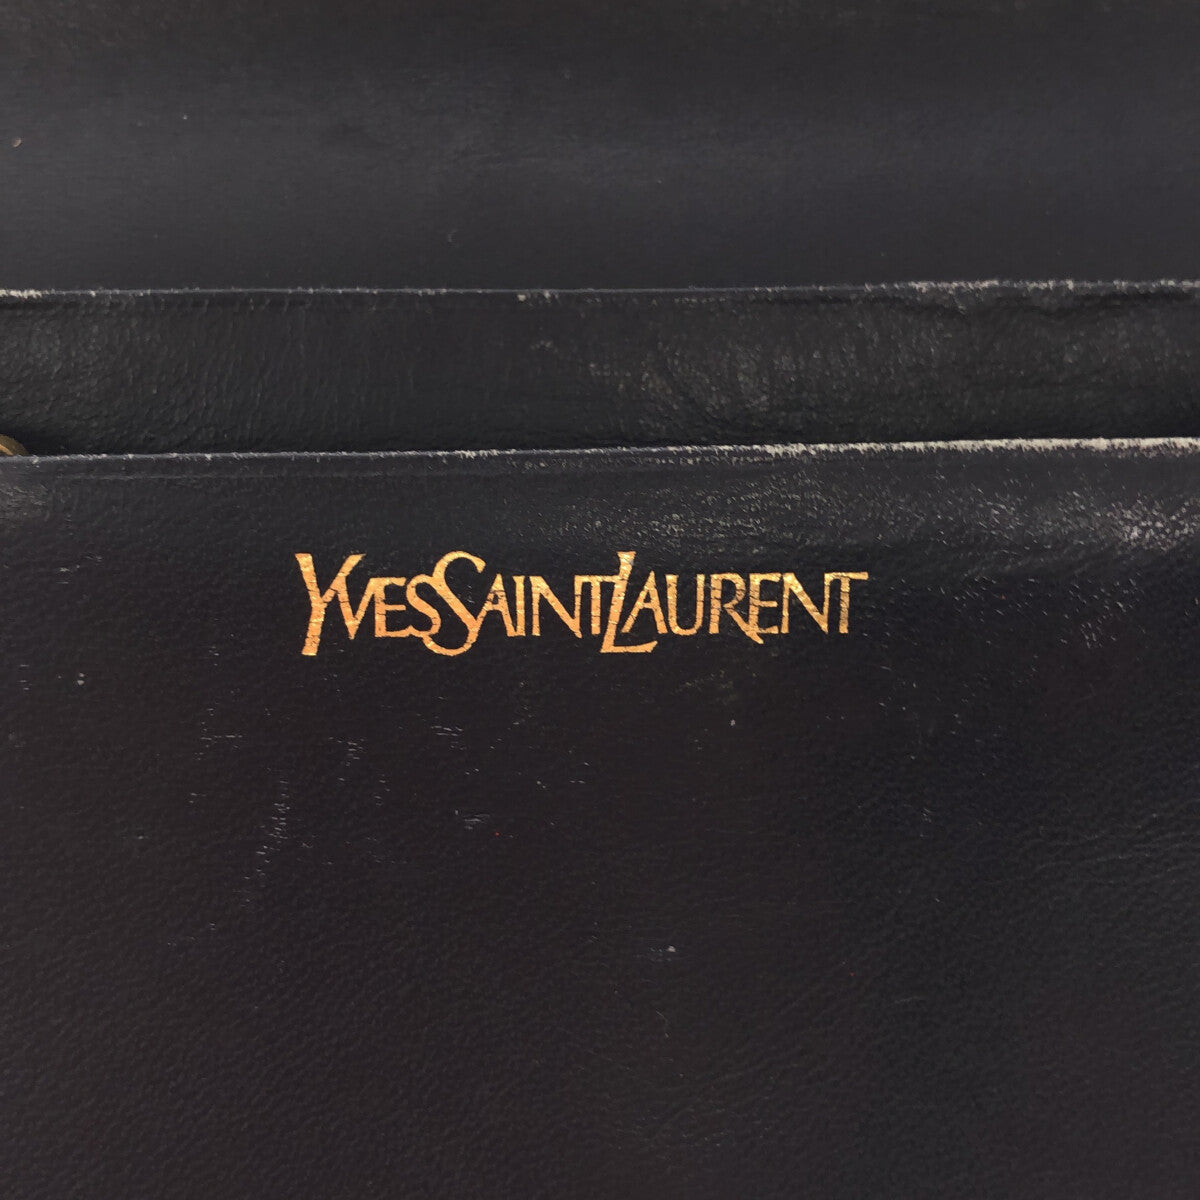 YVES SAINT LAURENT / イヴサンローラン | OLD / オールド パネル コンパクト レザー ウォレット |